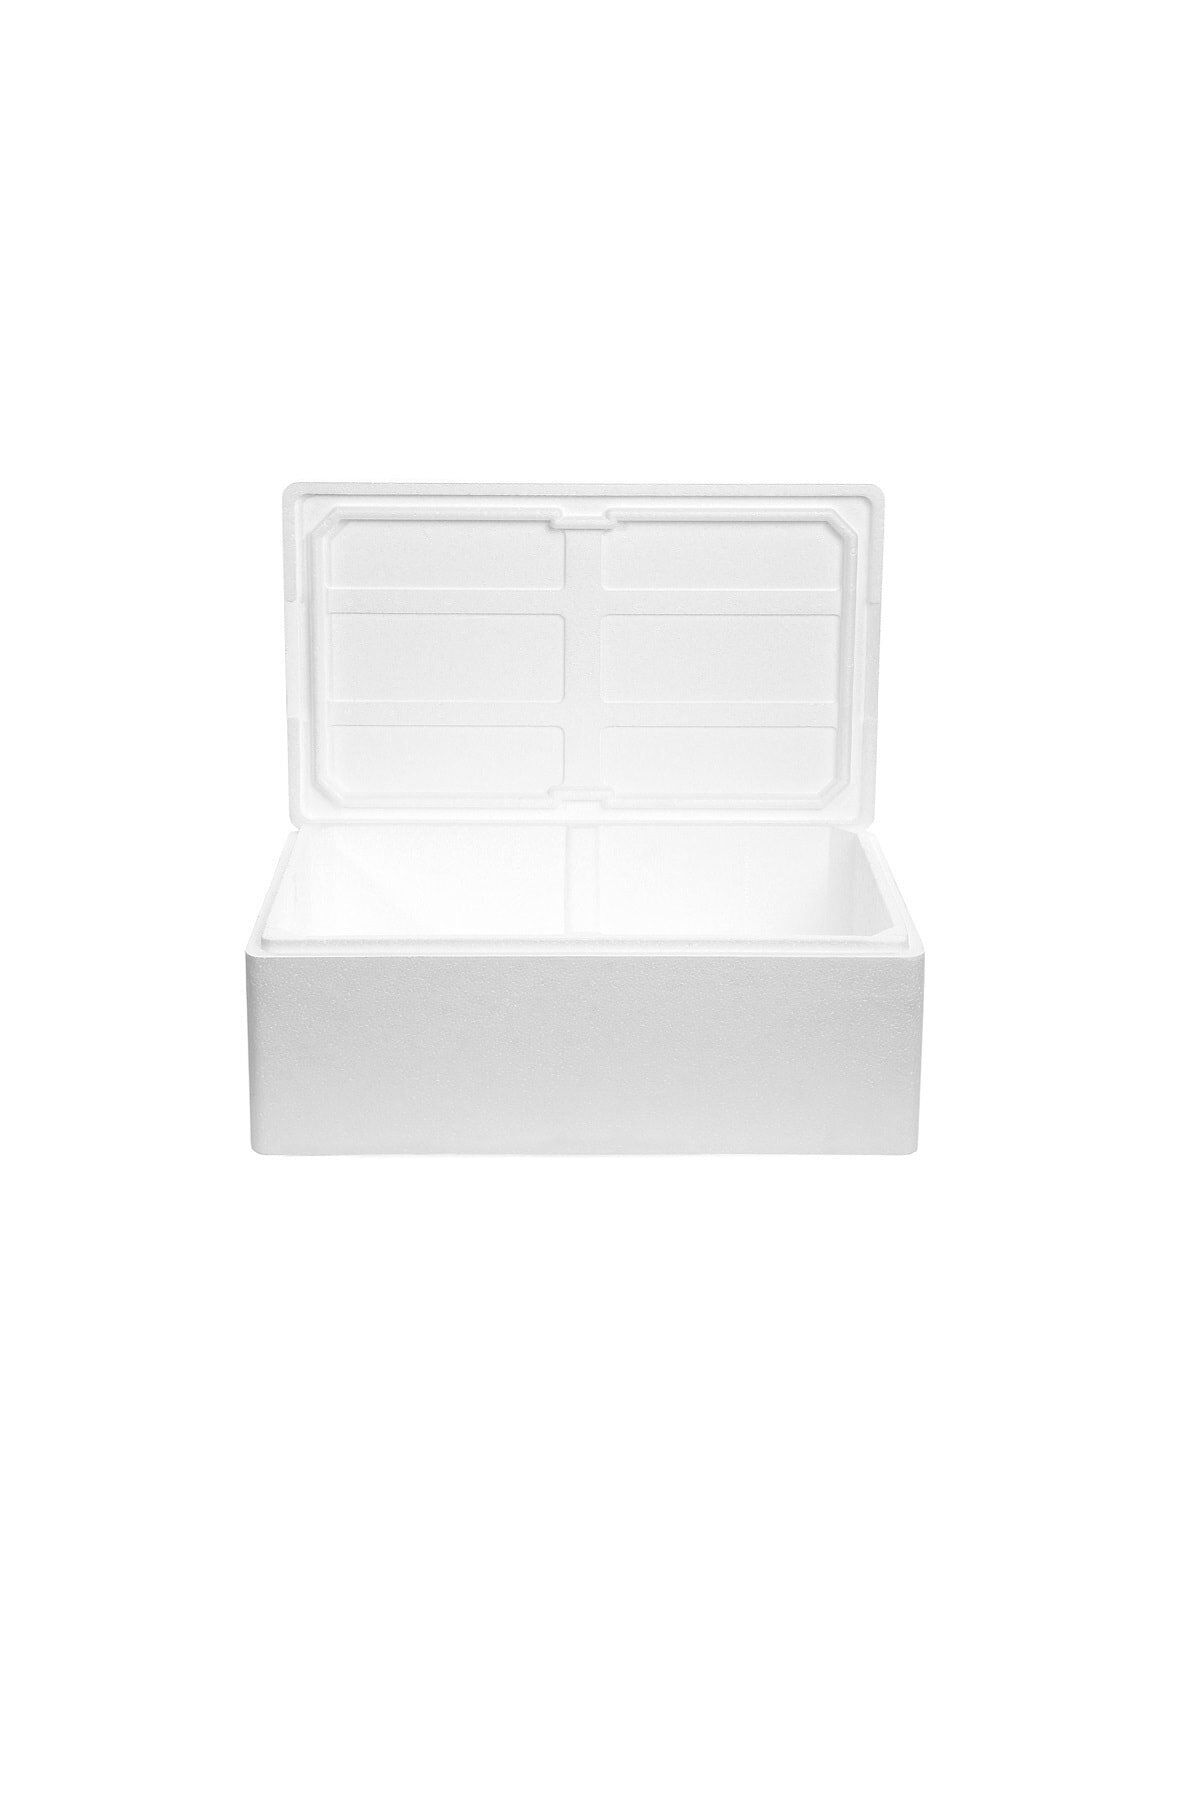 ViyolPazarı Beyaz Strafor Köpük Kutu (50x40x25,5) cm 15 kg - 1 Adet B-3